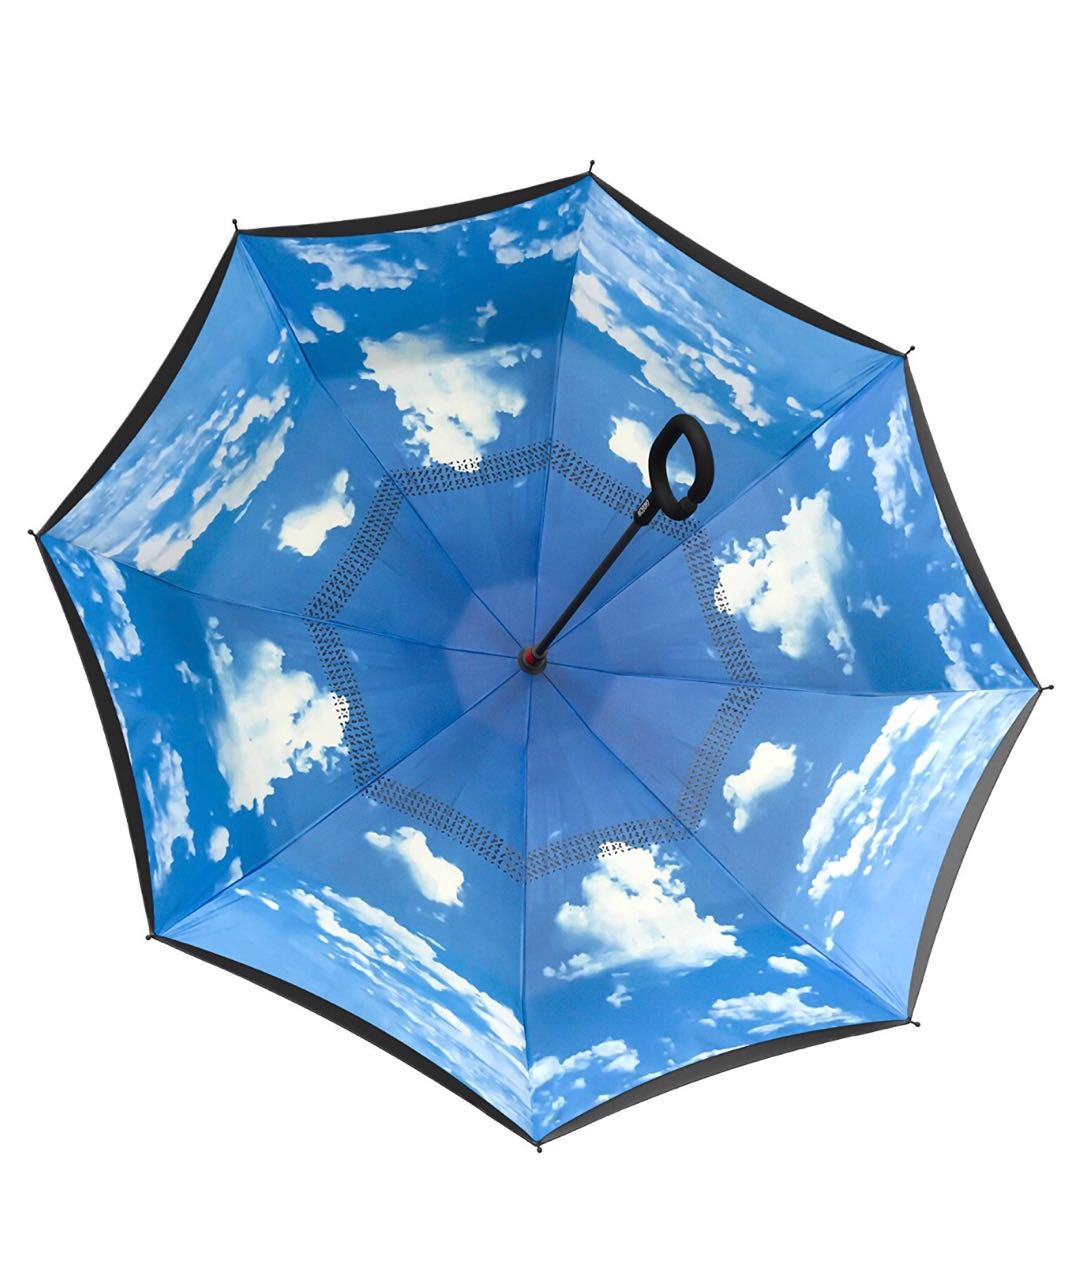 Reversed Umbrella